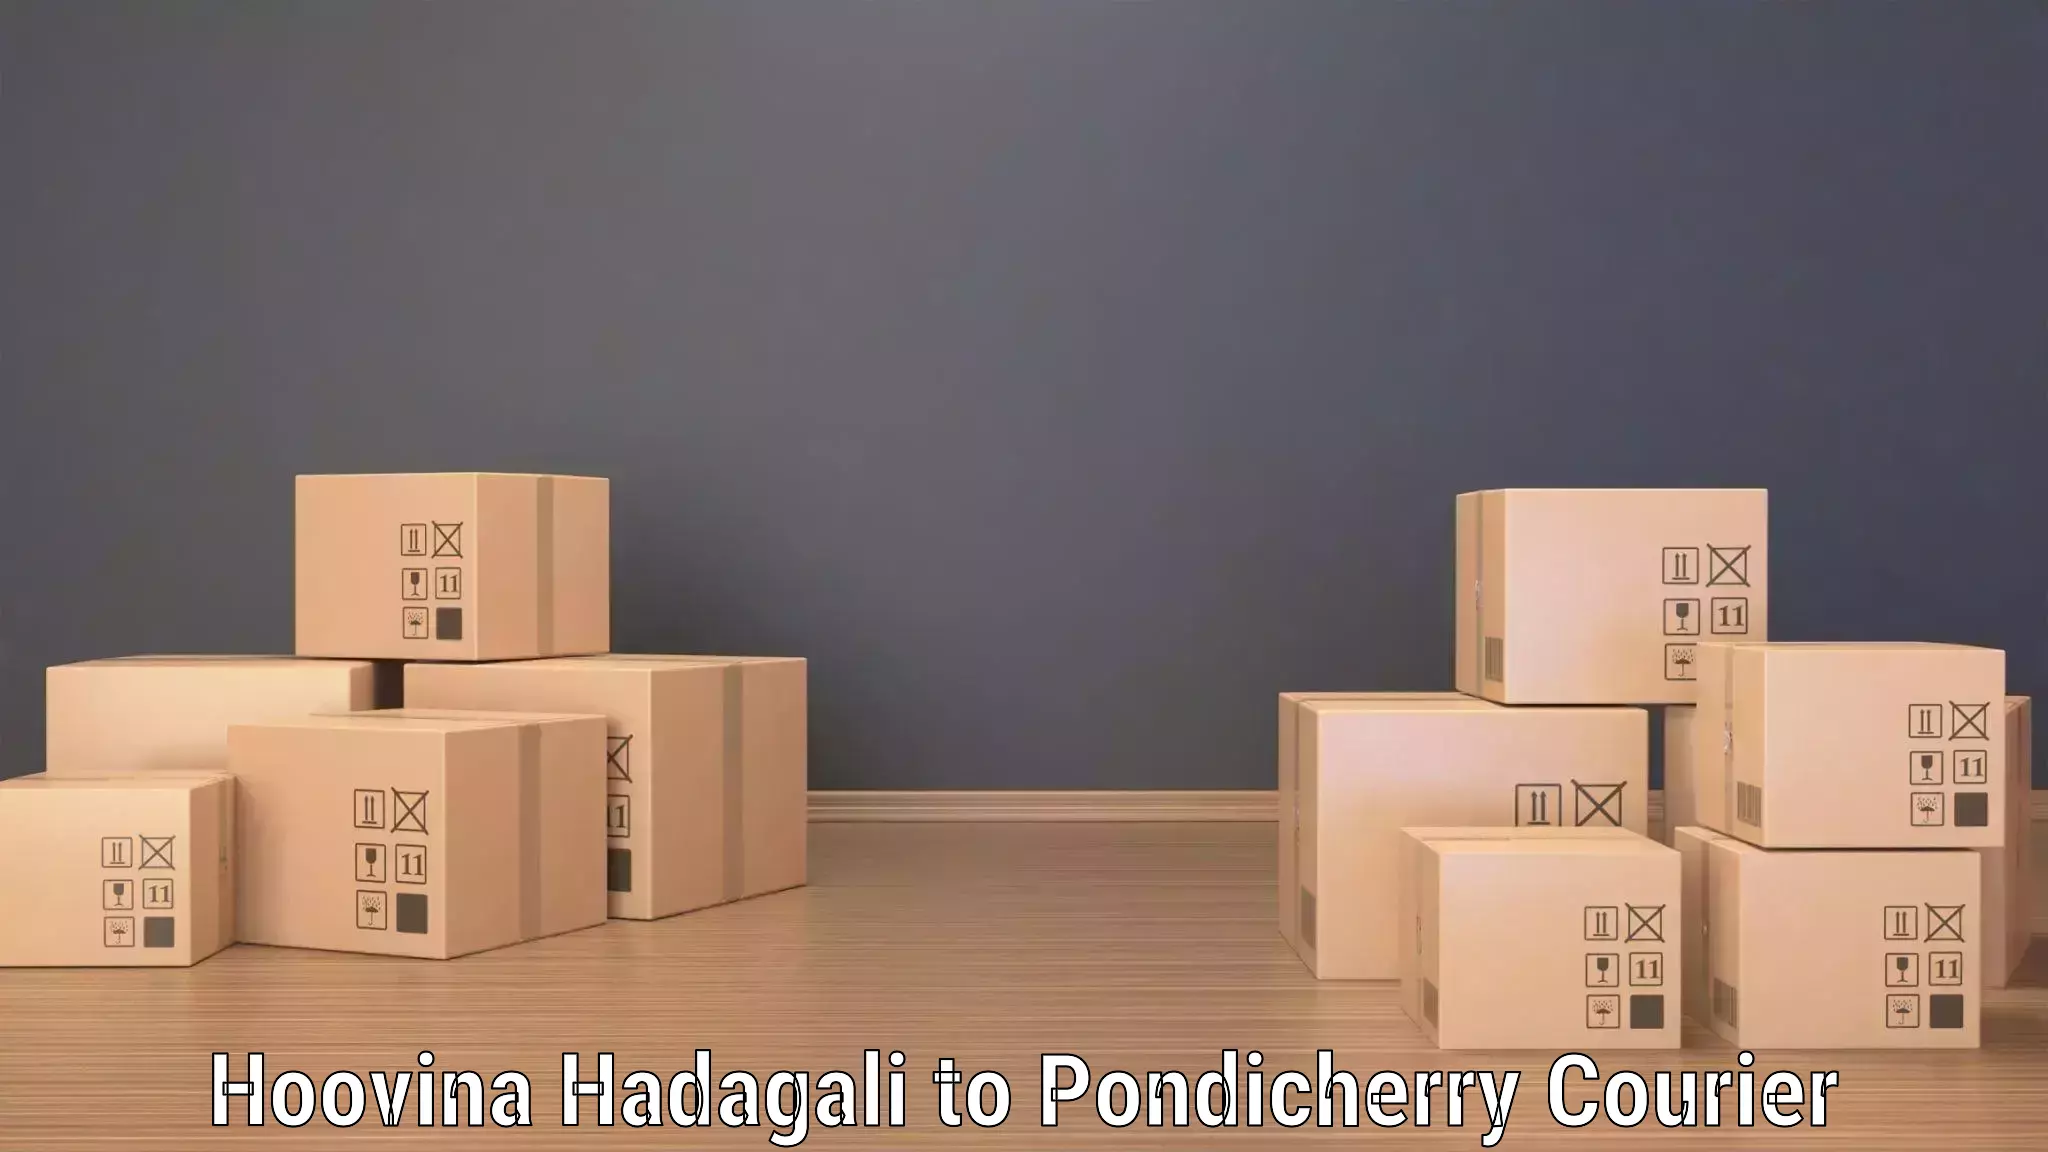 Efficient parcel service Hoovina Hadagali to Metttupalayam